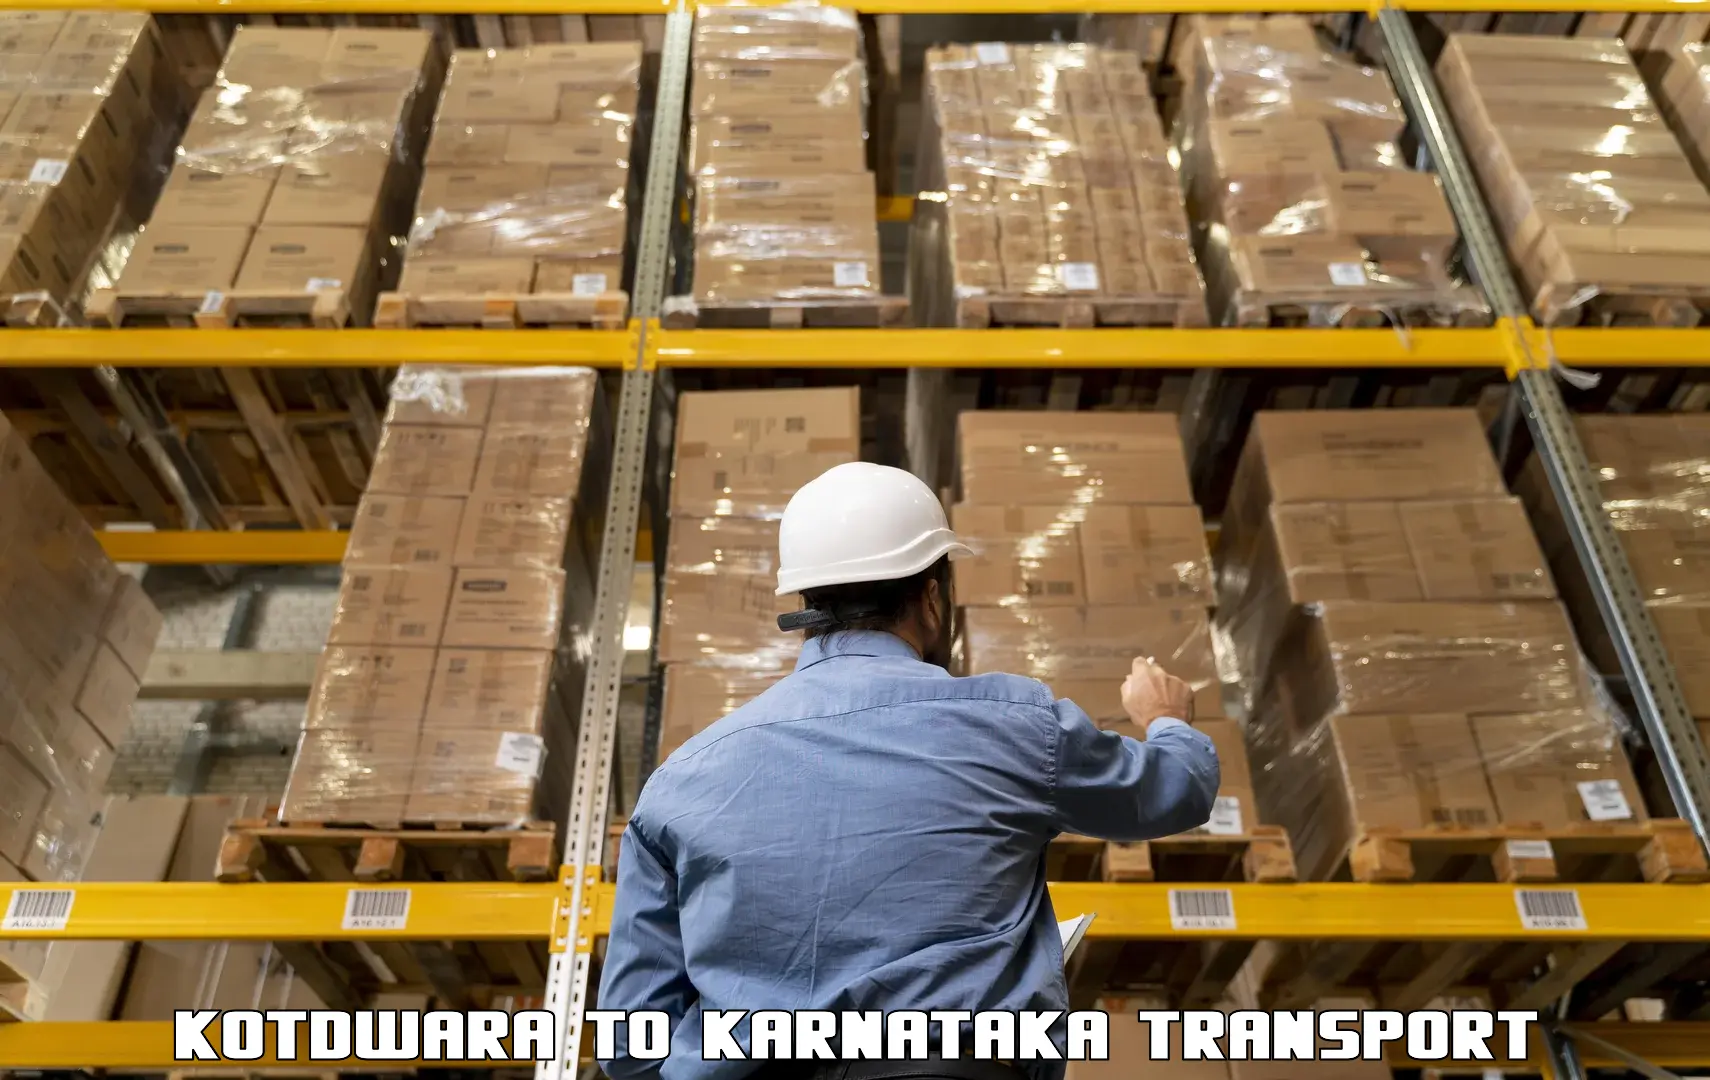 Lorry transport service Kotdwara to Yellare